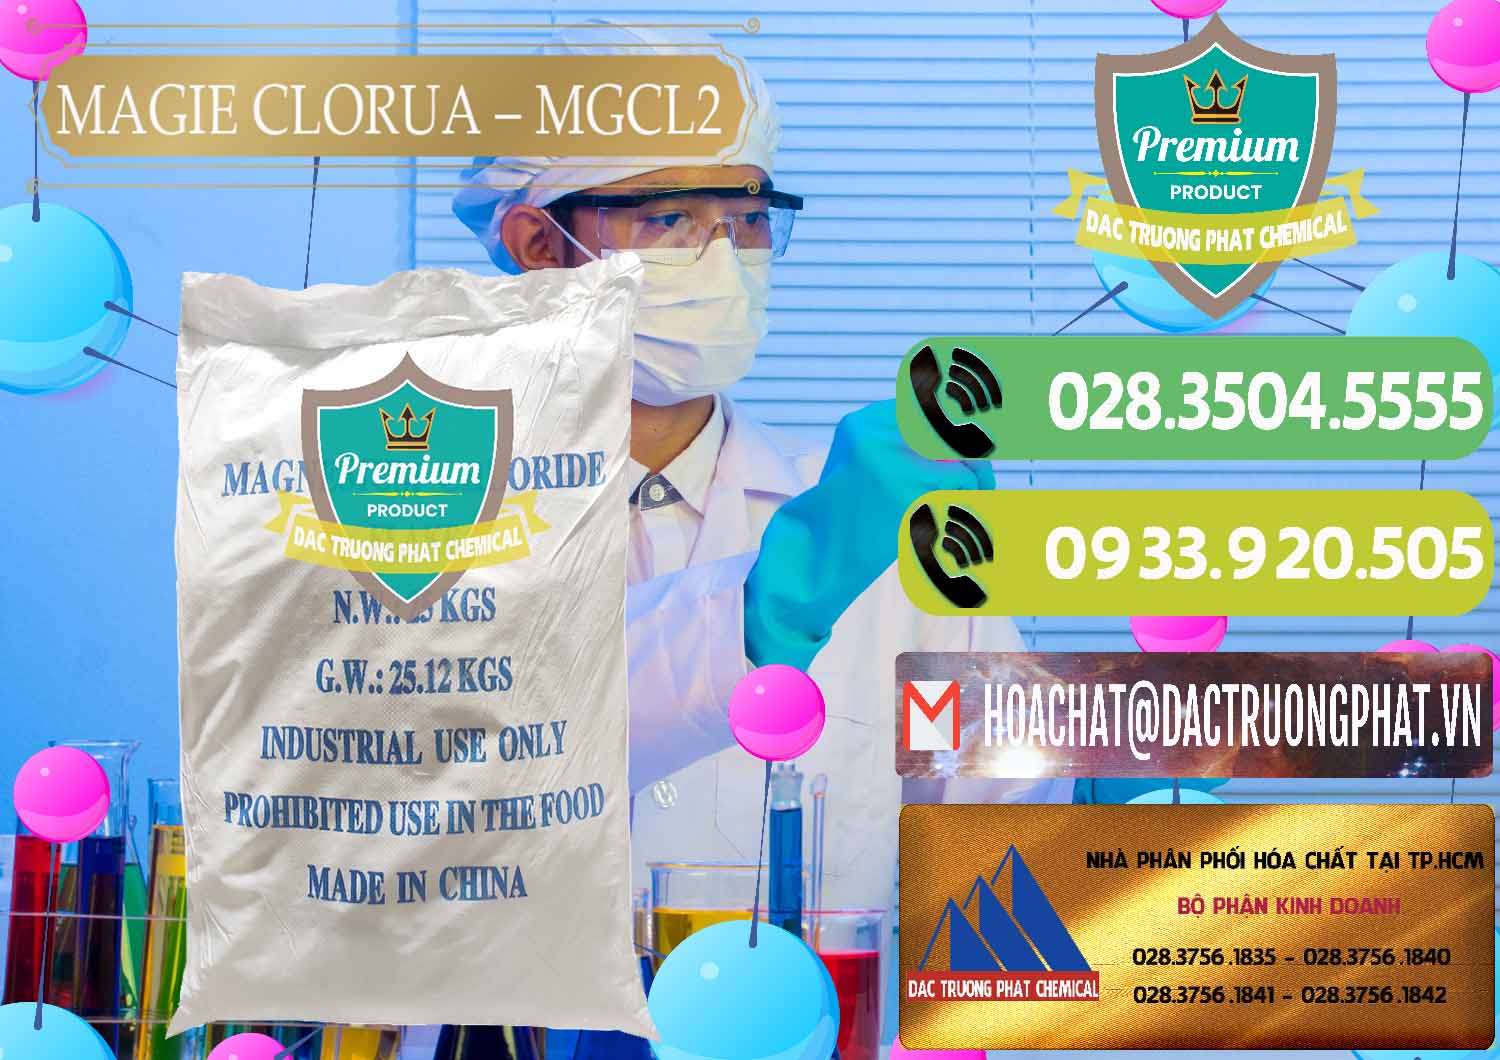 Chuyên cung ứng & bán Magie Clorua – MGCL2 96% Dạng Vảy Trung Quốc China - 0091 - Đơn vị cung cấp và phân phối hóa chất tại TP.HCM - hoachatmientay.vn